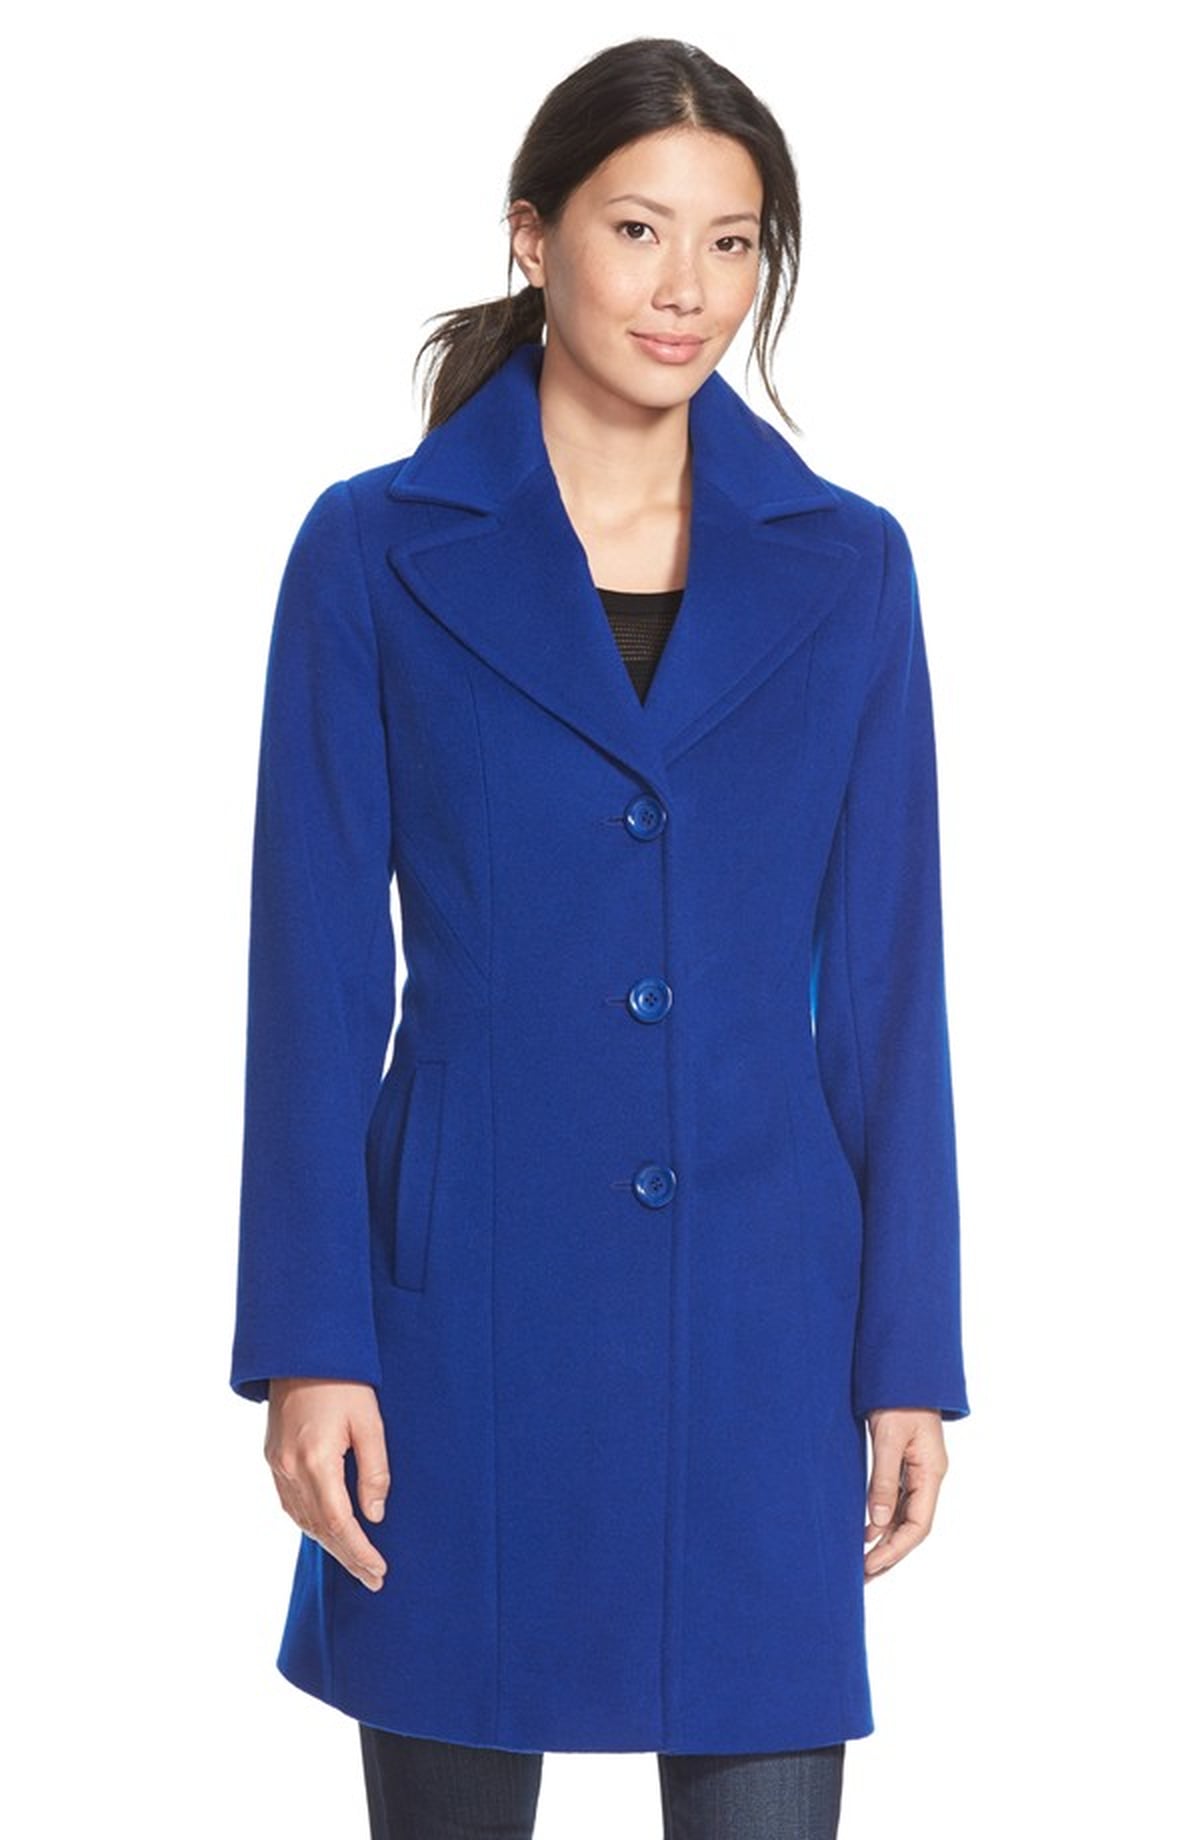 Kate Middleton Wearing Blue Reiss Coat | POPSUGAR Fashion